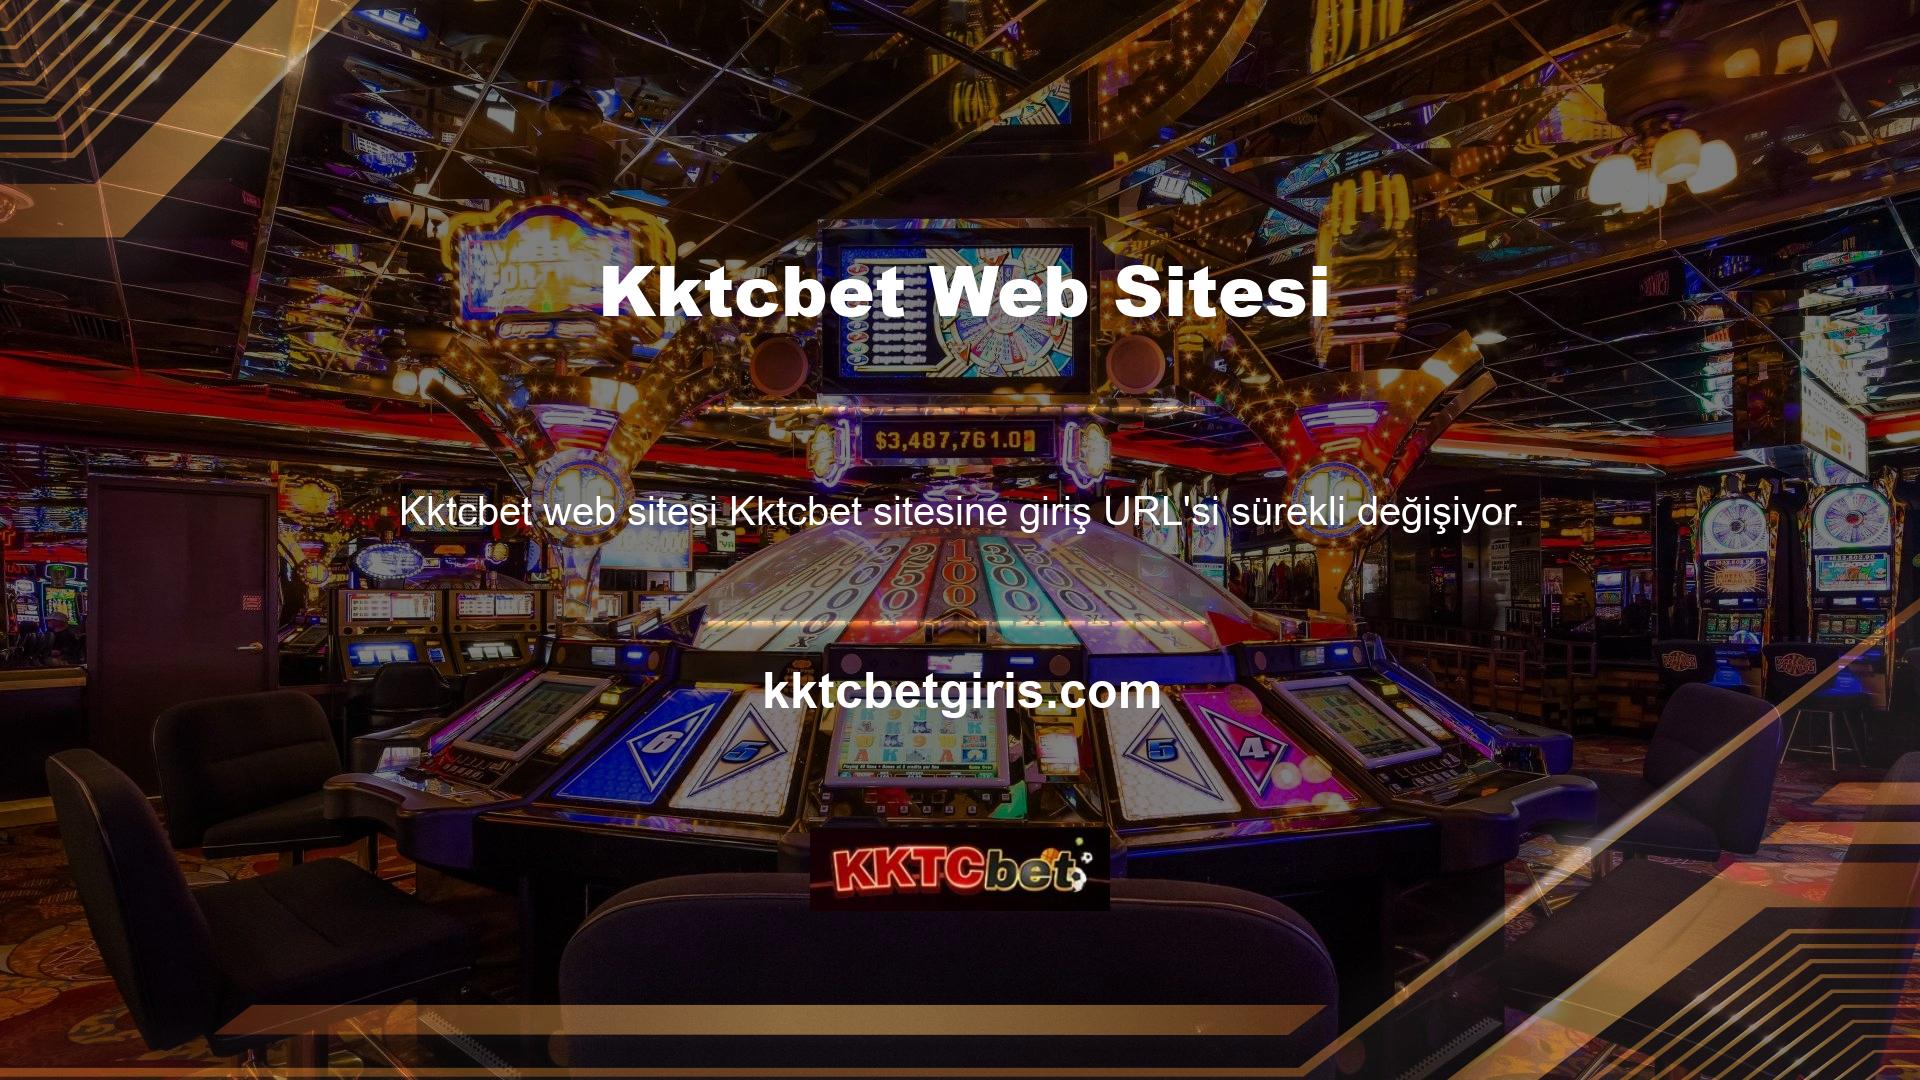 Web sitemiz Türkiye'nin ilk canlı casino sitesidir ancak Türkiye'ye girişte sorunlar yaşanmaktadır ve Kktcbet casino web sitesinin giriş adresi sürekli değişmektedir